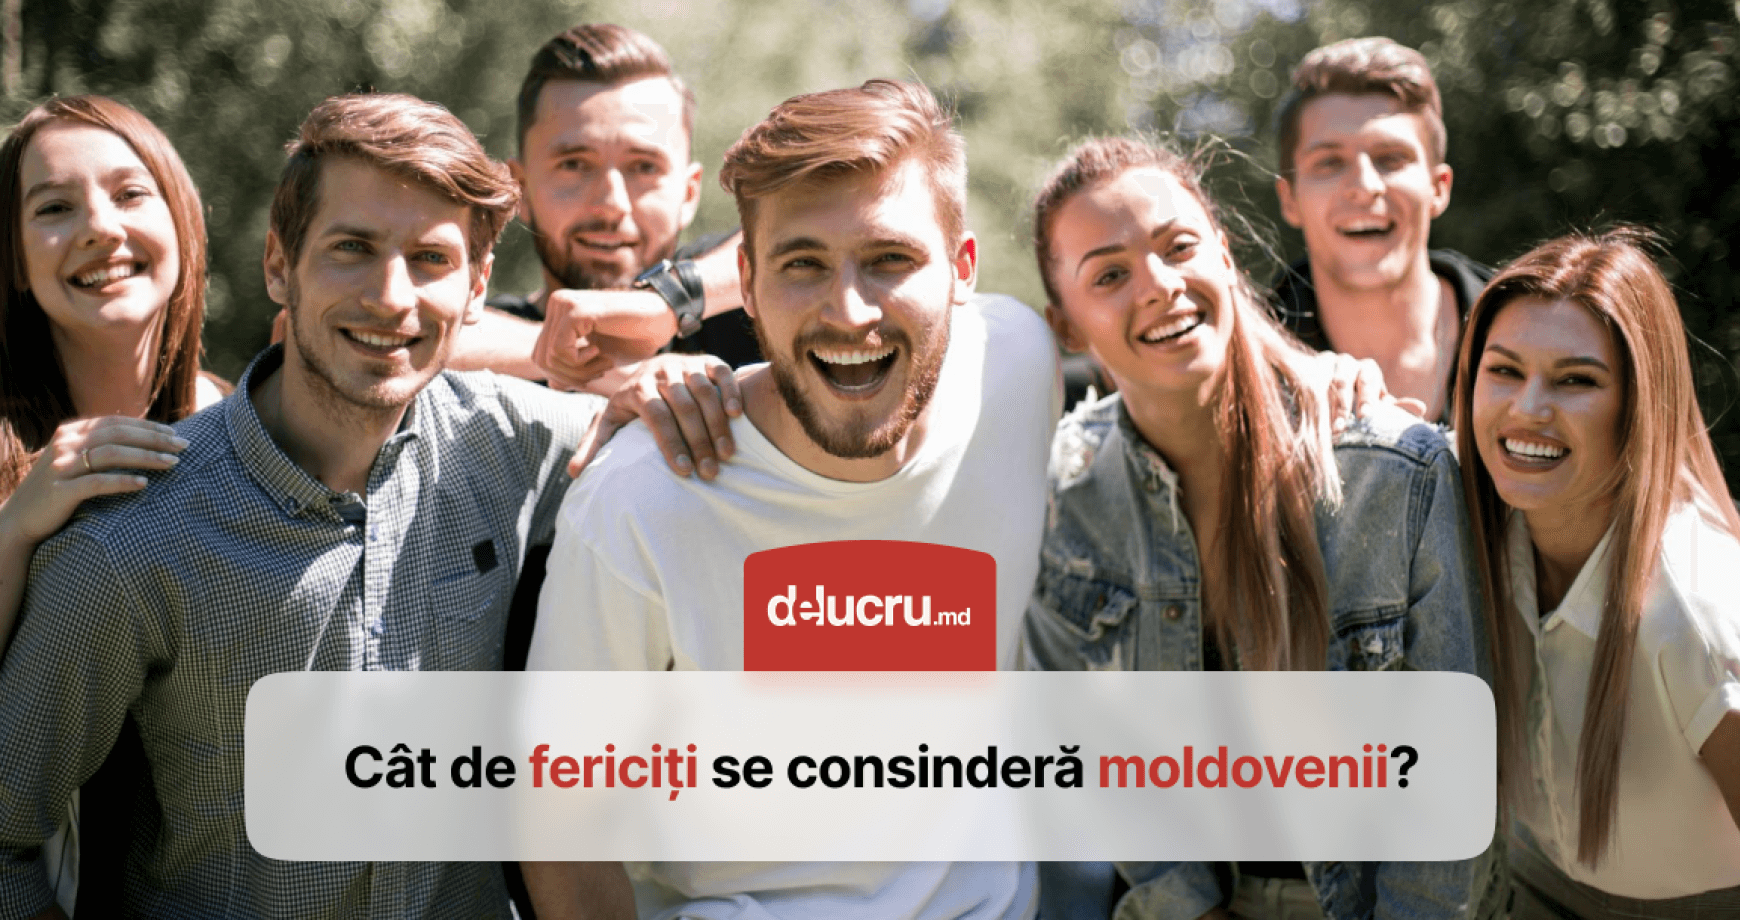 Cât de fericiți sunt moldovenii? Ce loc ocupă țara noastră într-un clasament mondial?